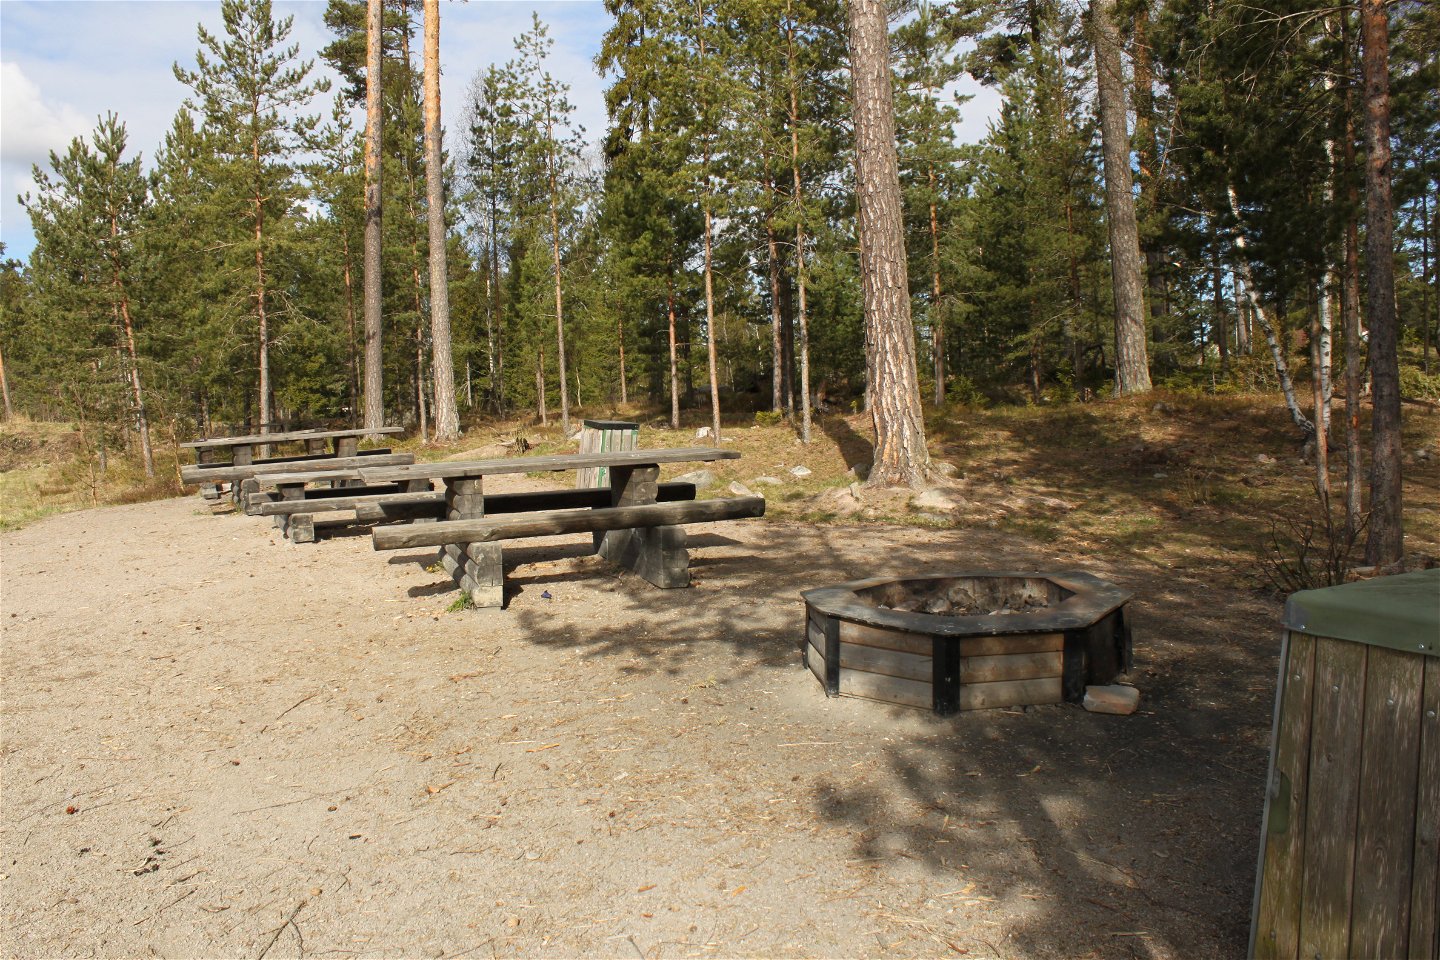 En grillplats står på jämn grusad yta. Vid grillplatsen finns flera bänkbord och soptunnor.